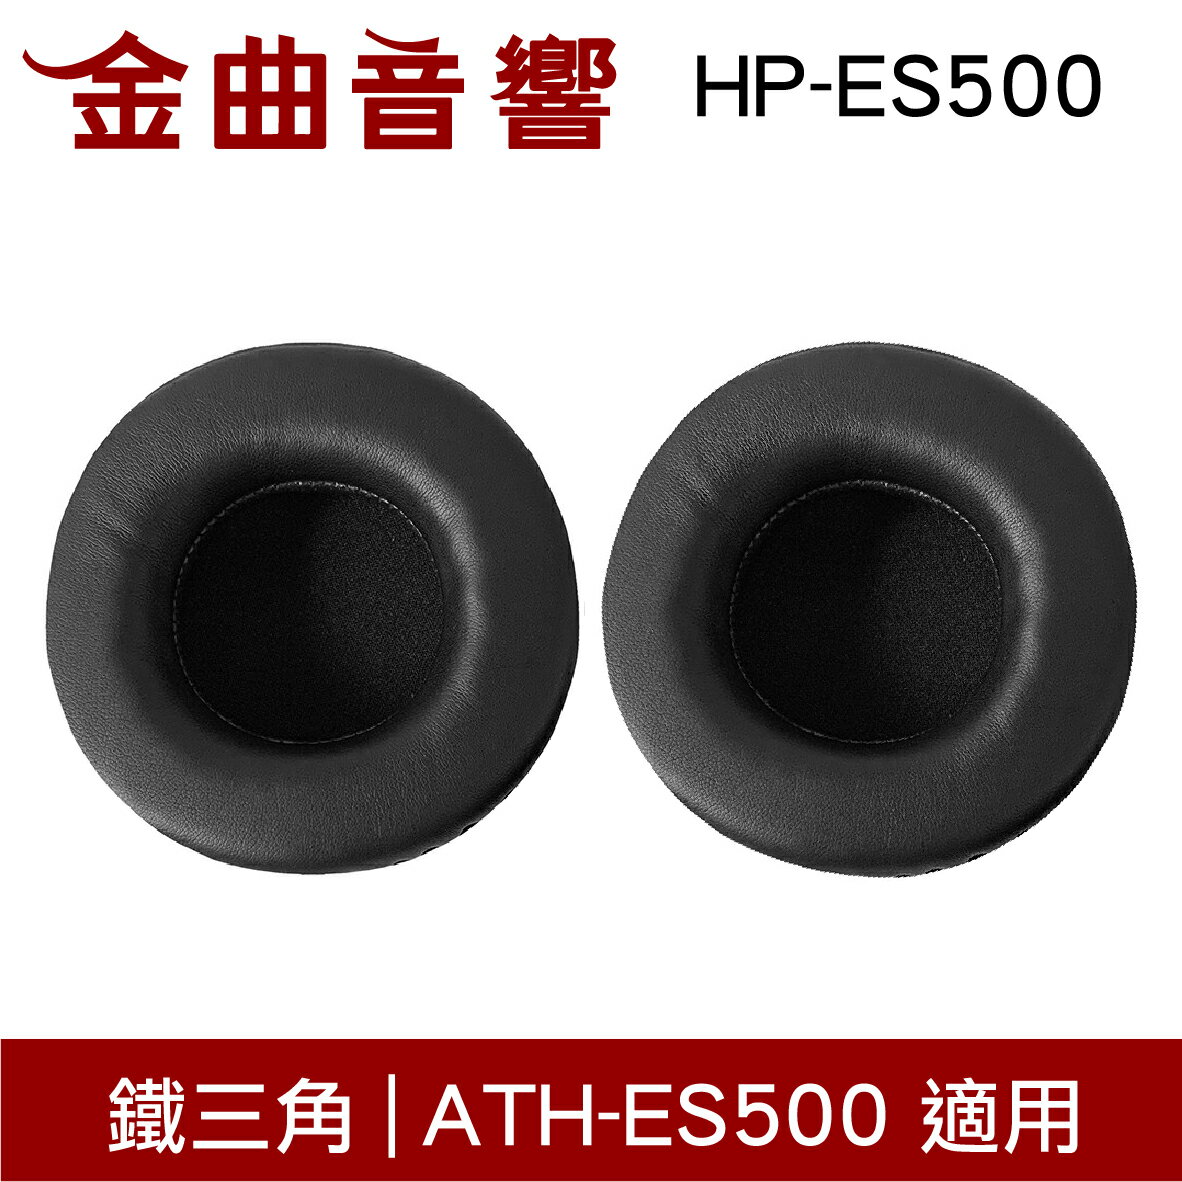 鐵三角 HP-ES500 替換耳罩 一對 ATH-ES500 適用 | 金曲音響